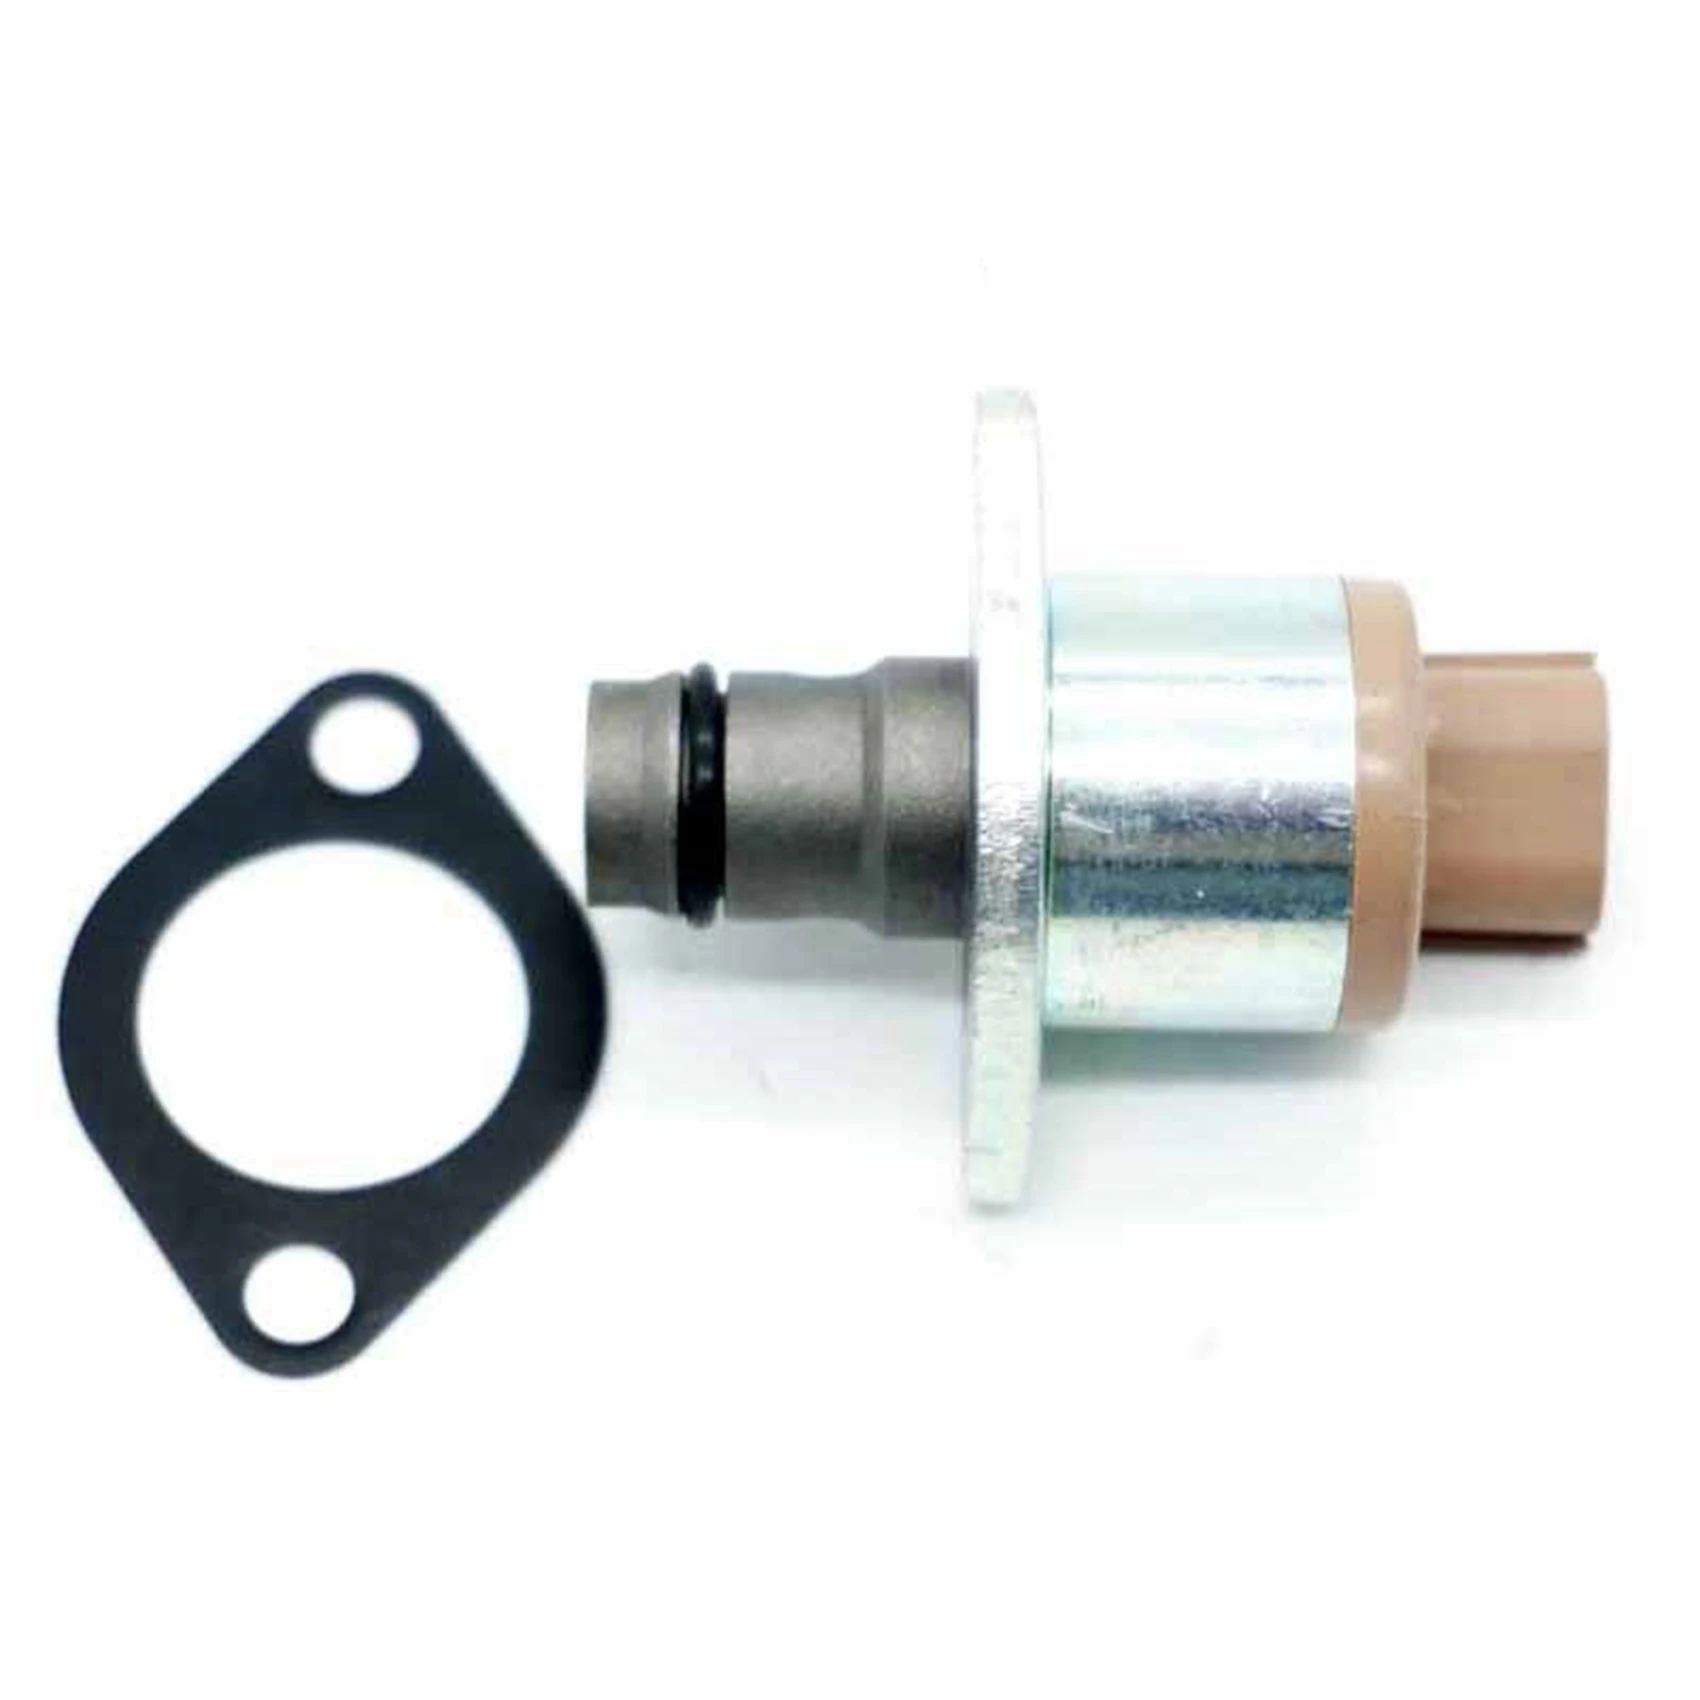 

Топливный насос давления всасывания контрольный клапан SCV для Peugeot Mazda Nissan Mitsubish Ford Opel 294200-0360 6C1Q-9358-AB